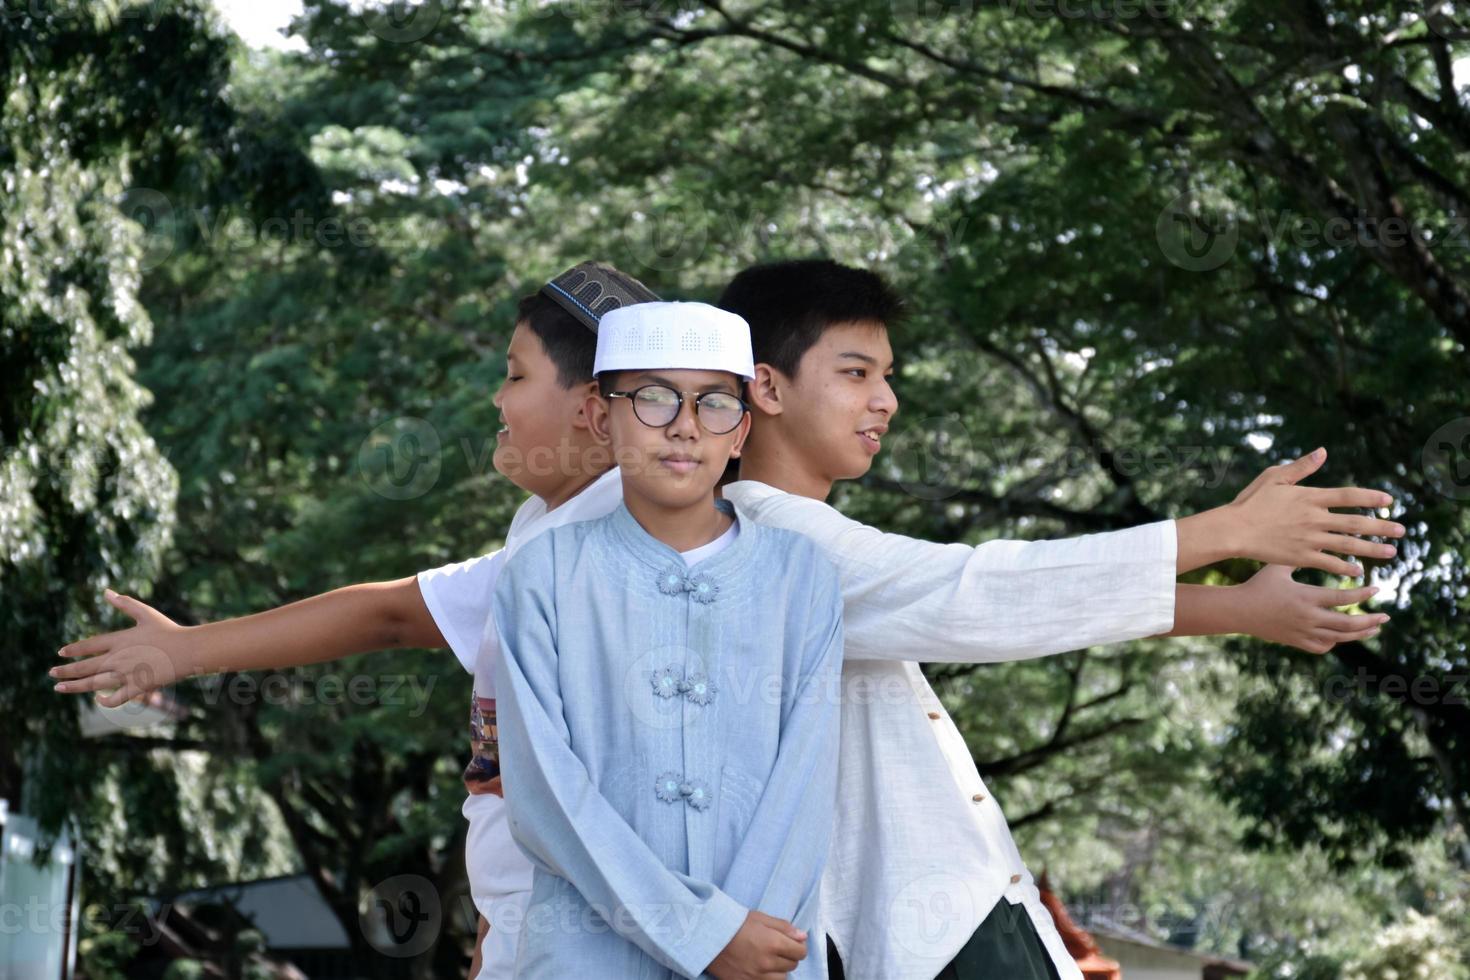 jovens muçulmanos asiáticos levantaram as mãos, sorrindo e se abraçando para apresentar felicidade sob as árvores do parque, foco suave e seletivo. foto